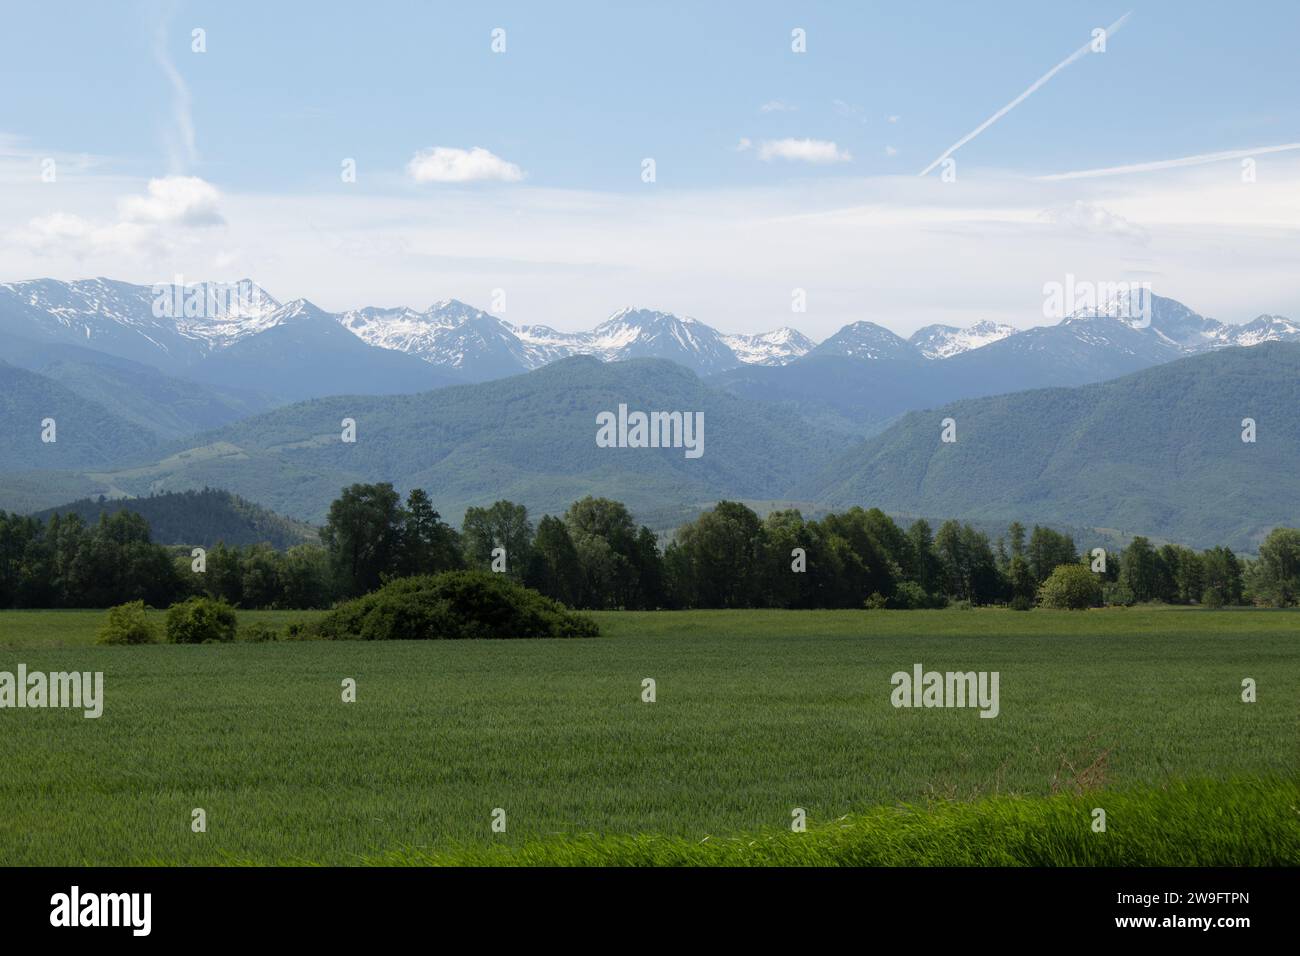 The Carpathian Mountains, Romania Stock Photo